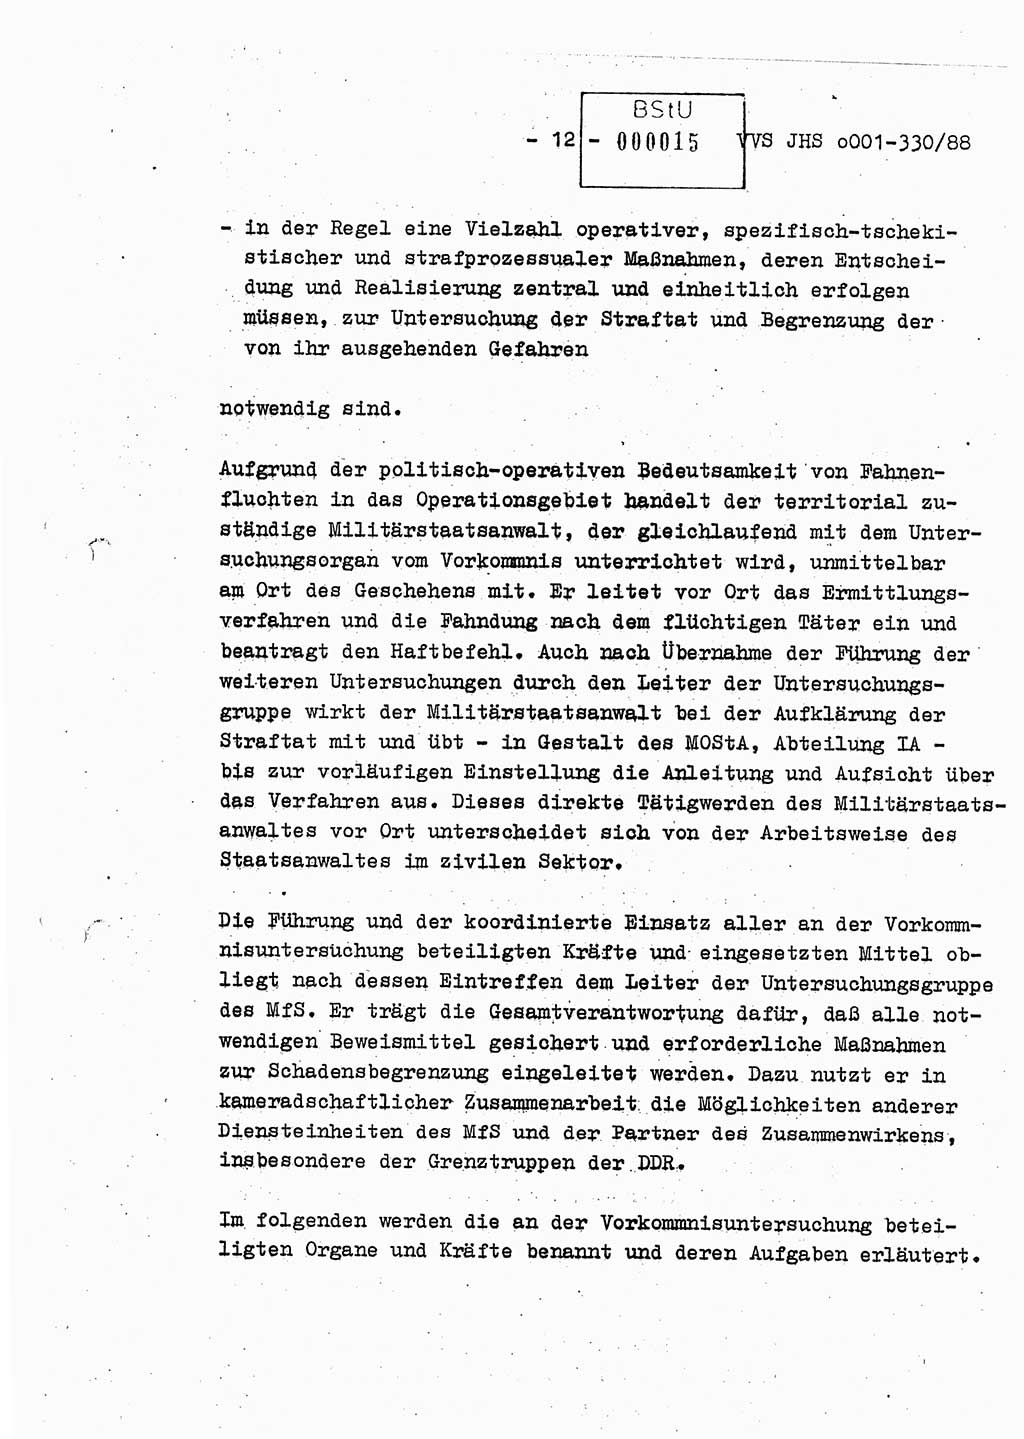 Diplomarbeit Offiziersschüler Thomas Mühle (HA Ⅸ/6), Ministerium für Staatssicherheit (MfS) [Deutsche Demokratische Republik (DDR)], Juristische Hochschule (JHS), Vertrauliche Verschlußsache (VVS) o001-330/88, Potsdam 1988, Seite 12 (Dipl.-Arb. MfS DDR JHS VVS o001-330/88 1988, S. 12)